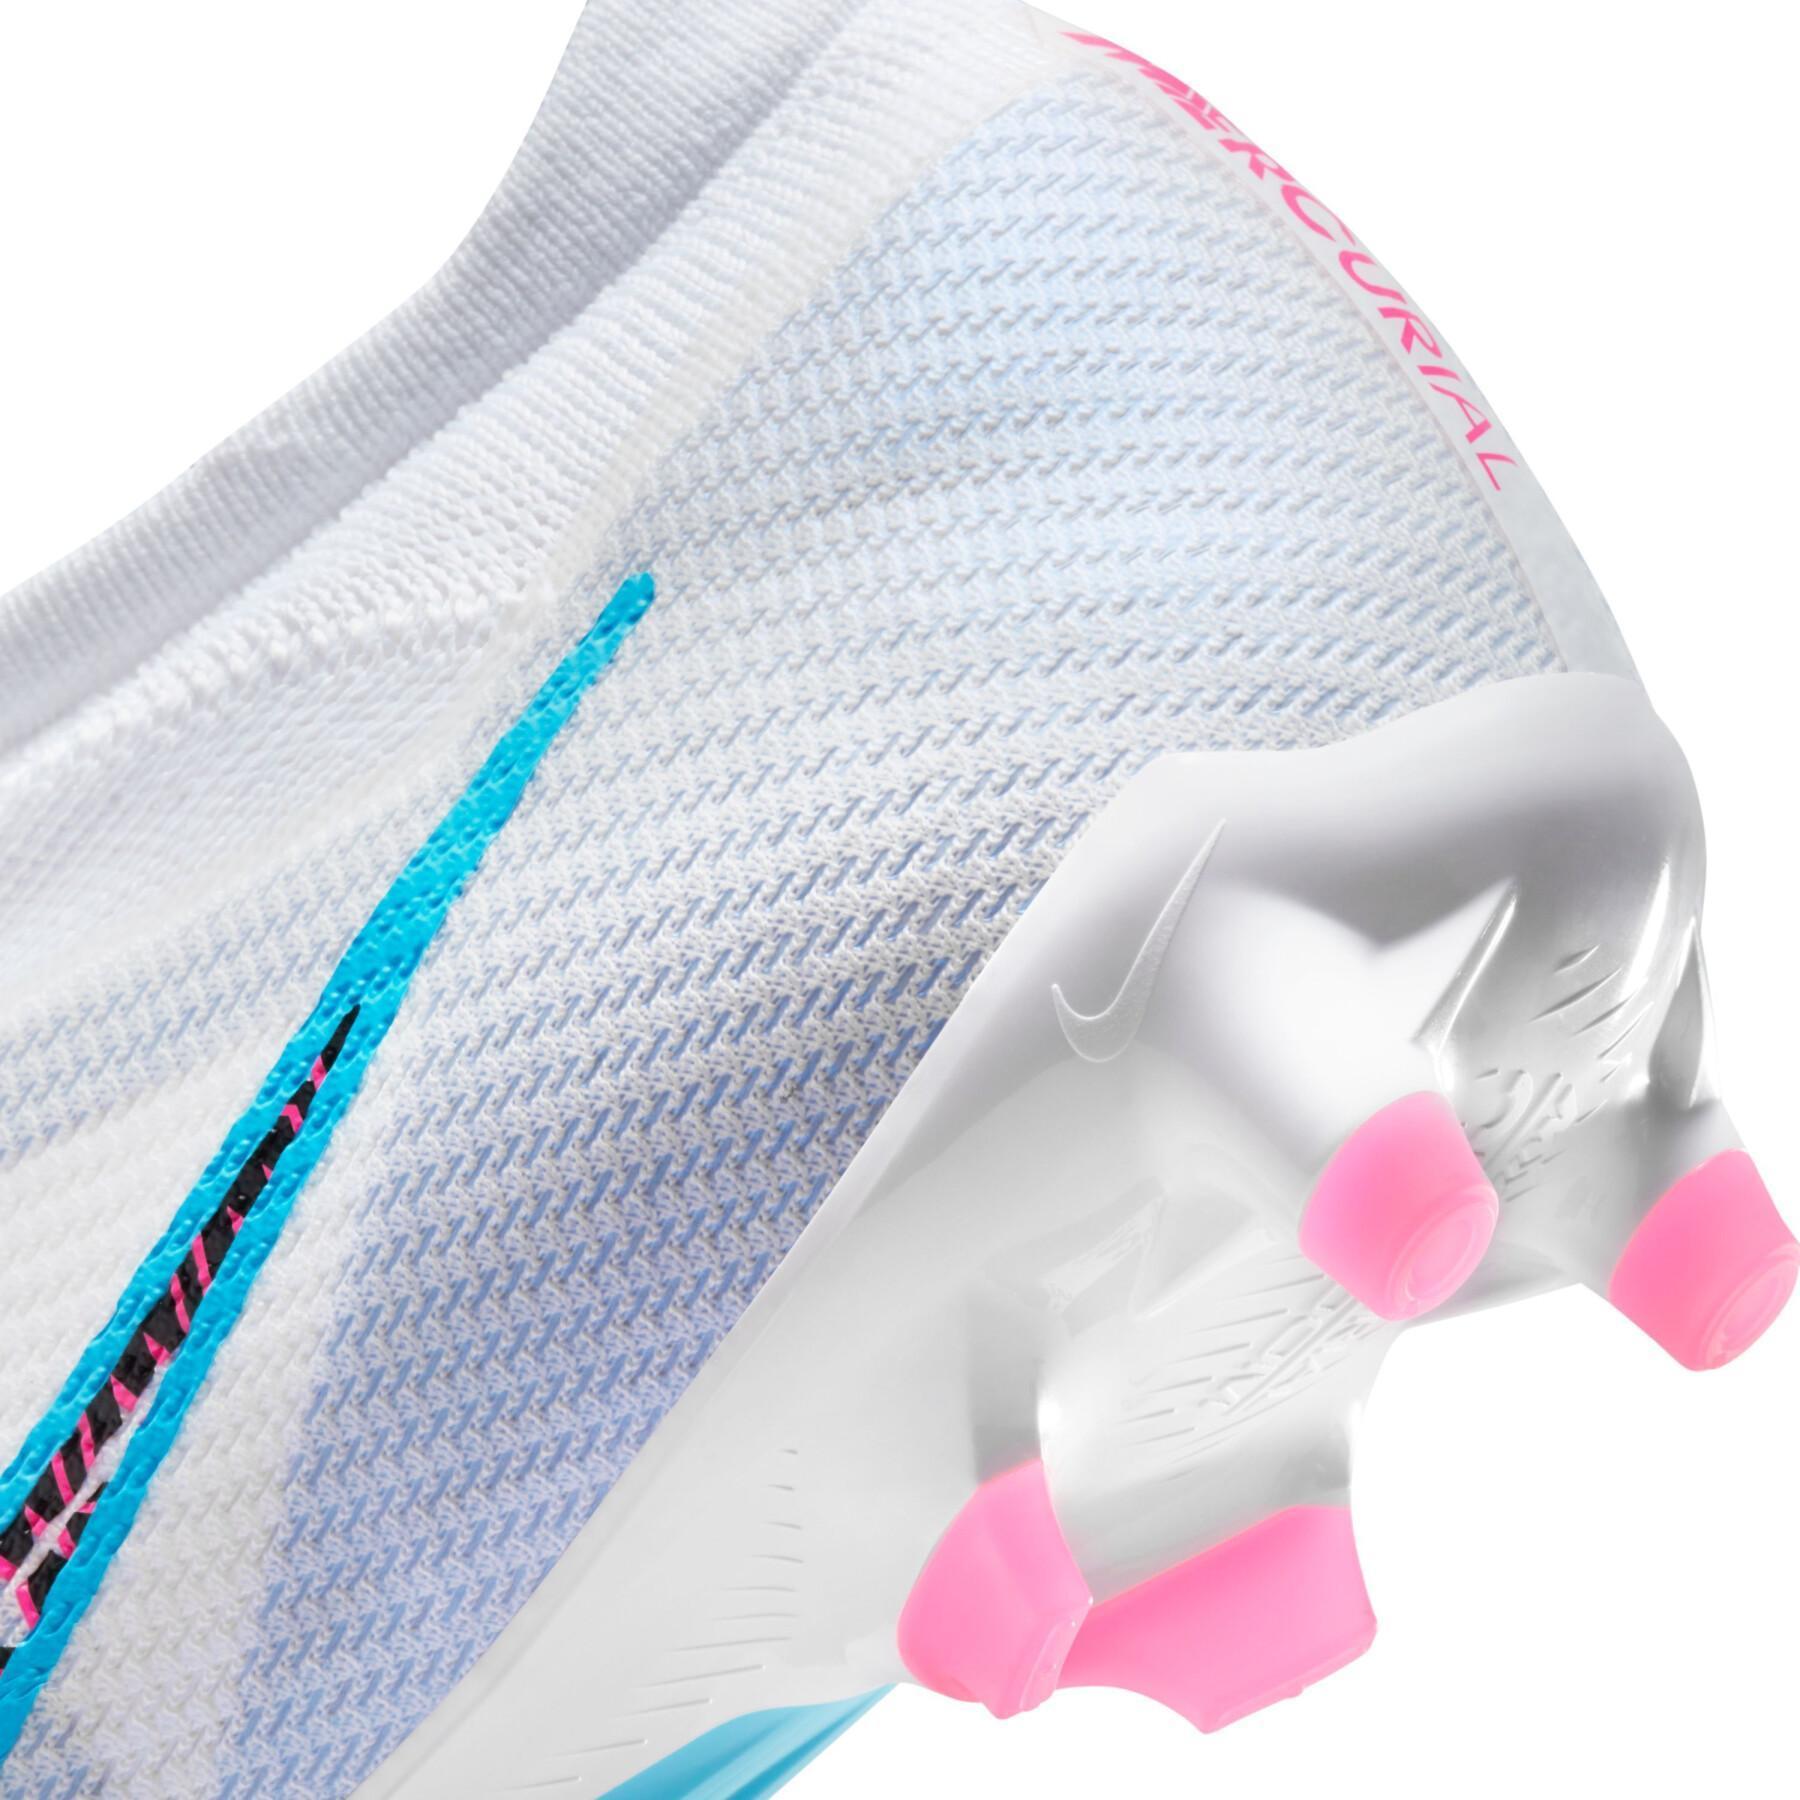 Buty piłkarskie Nike Zoom Mercurial Vapor 15 Pro AG - Blast Pack